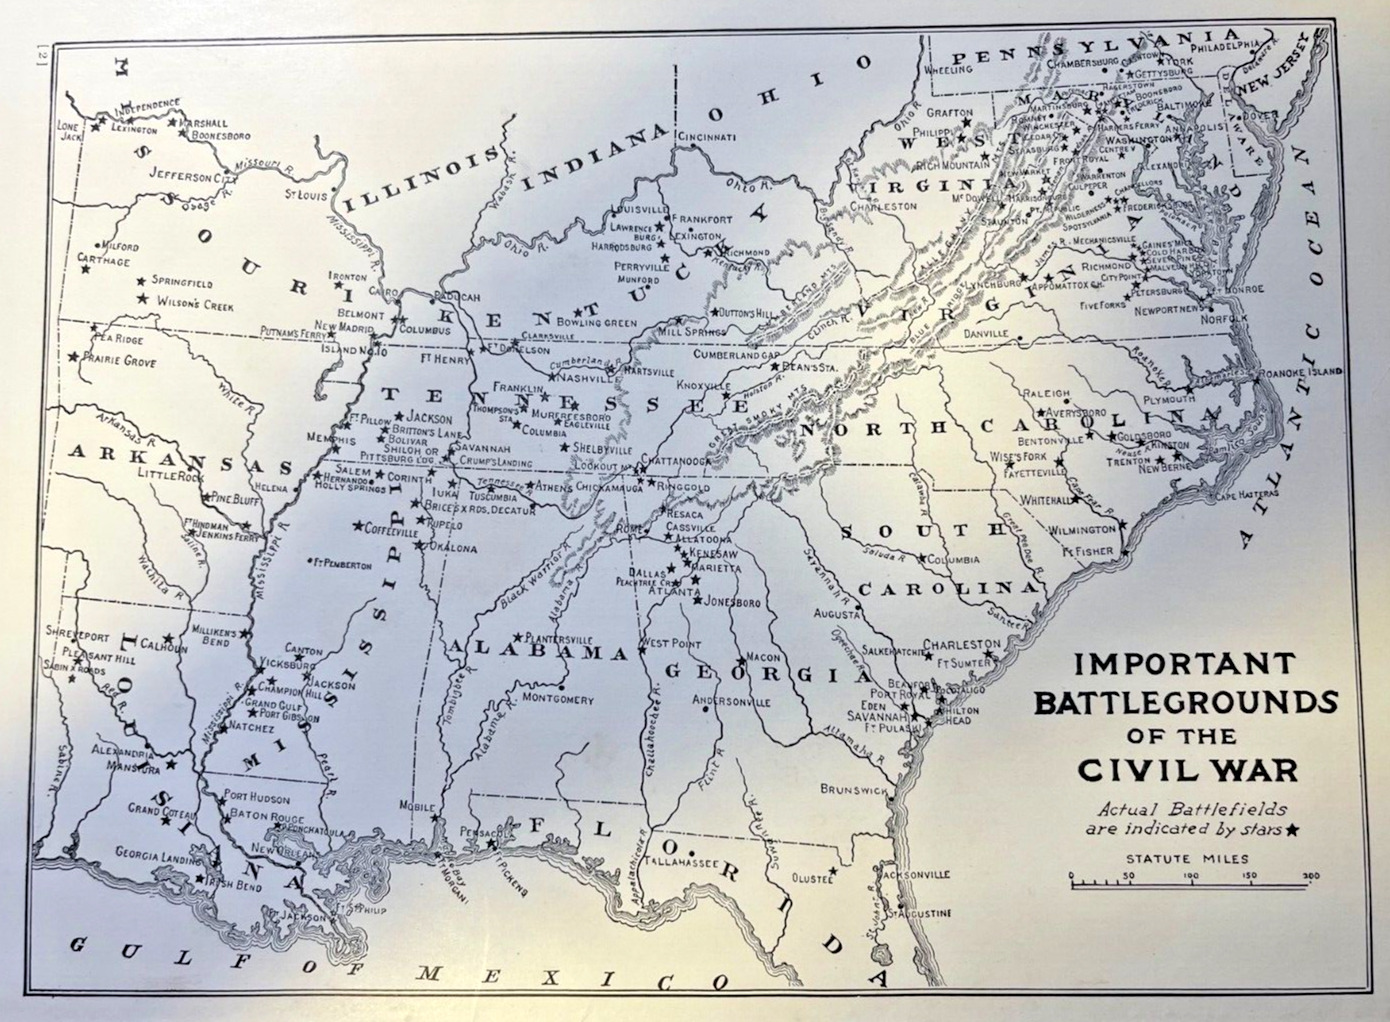 1912 Vintage Illustration Map Showing Important Battlegrounds of Civil War